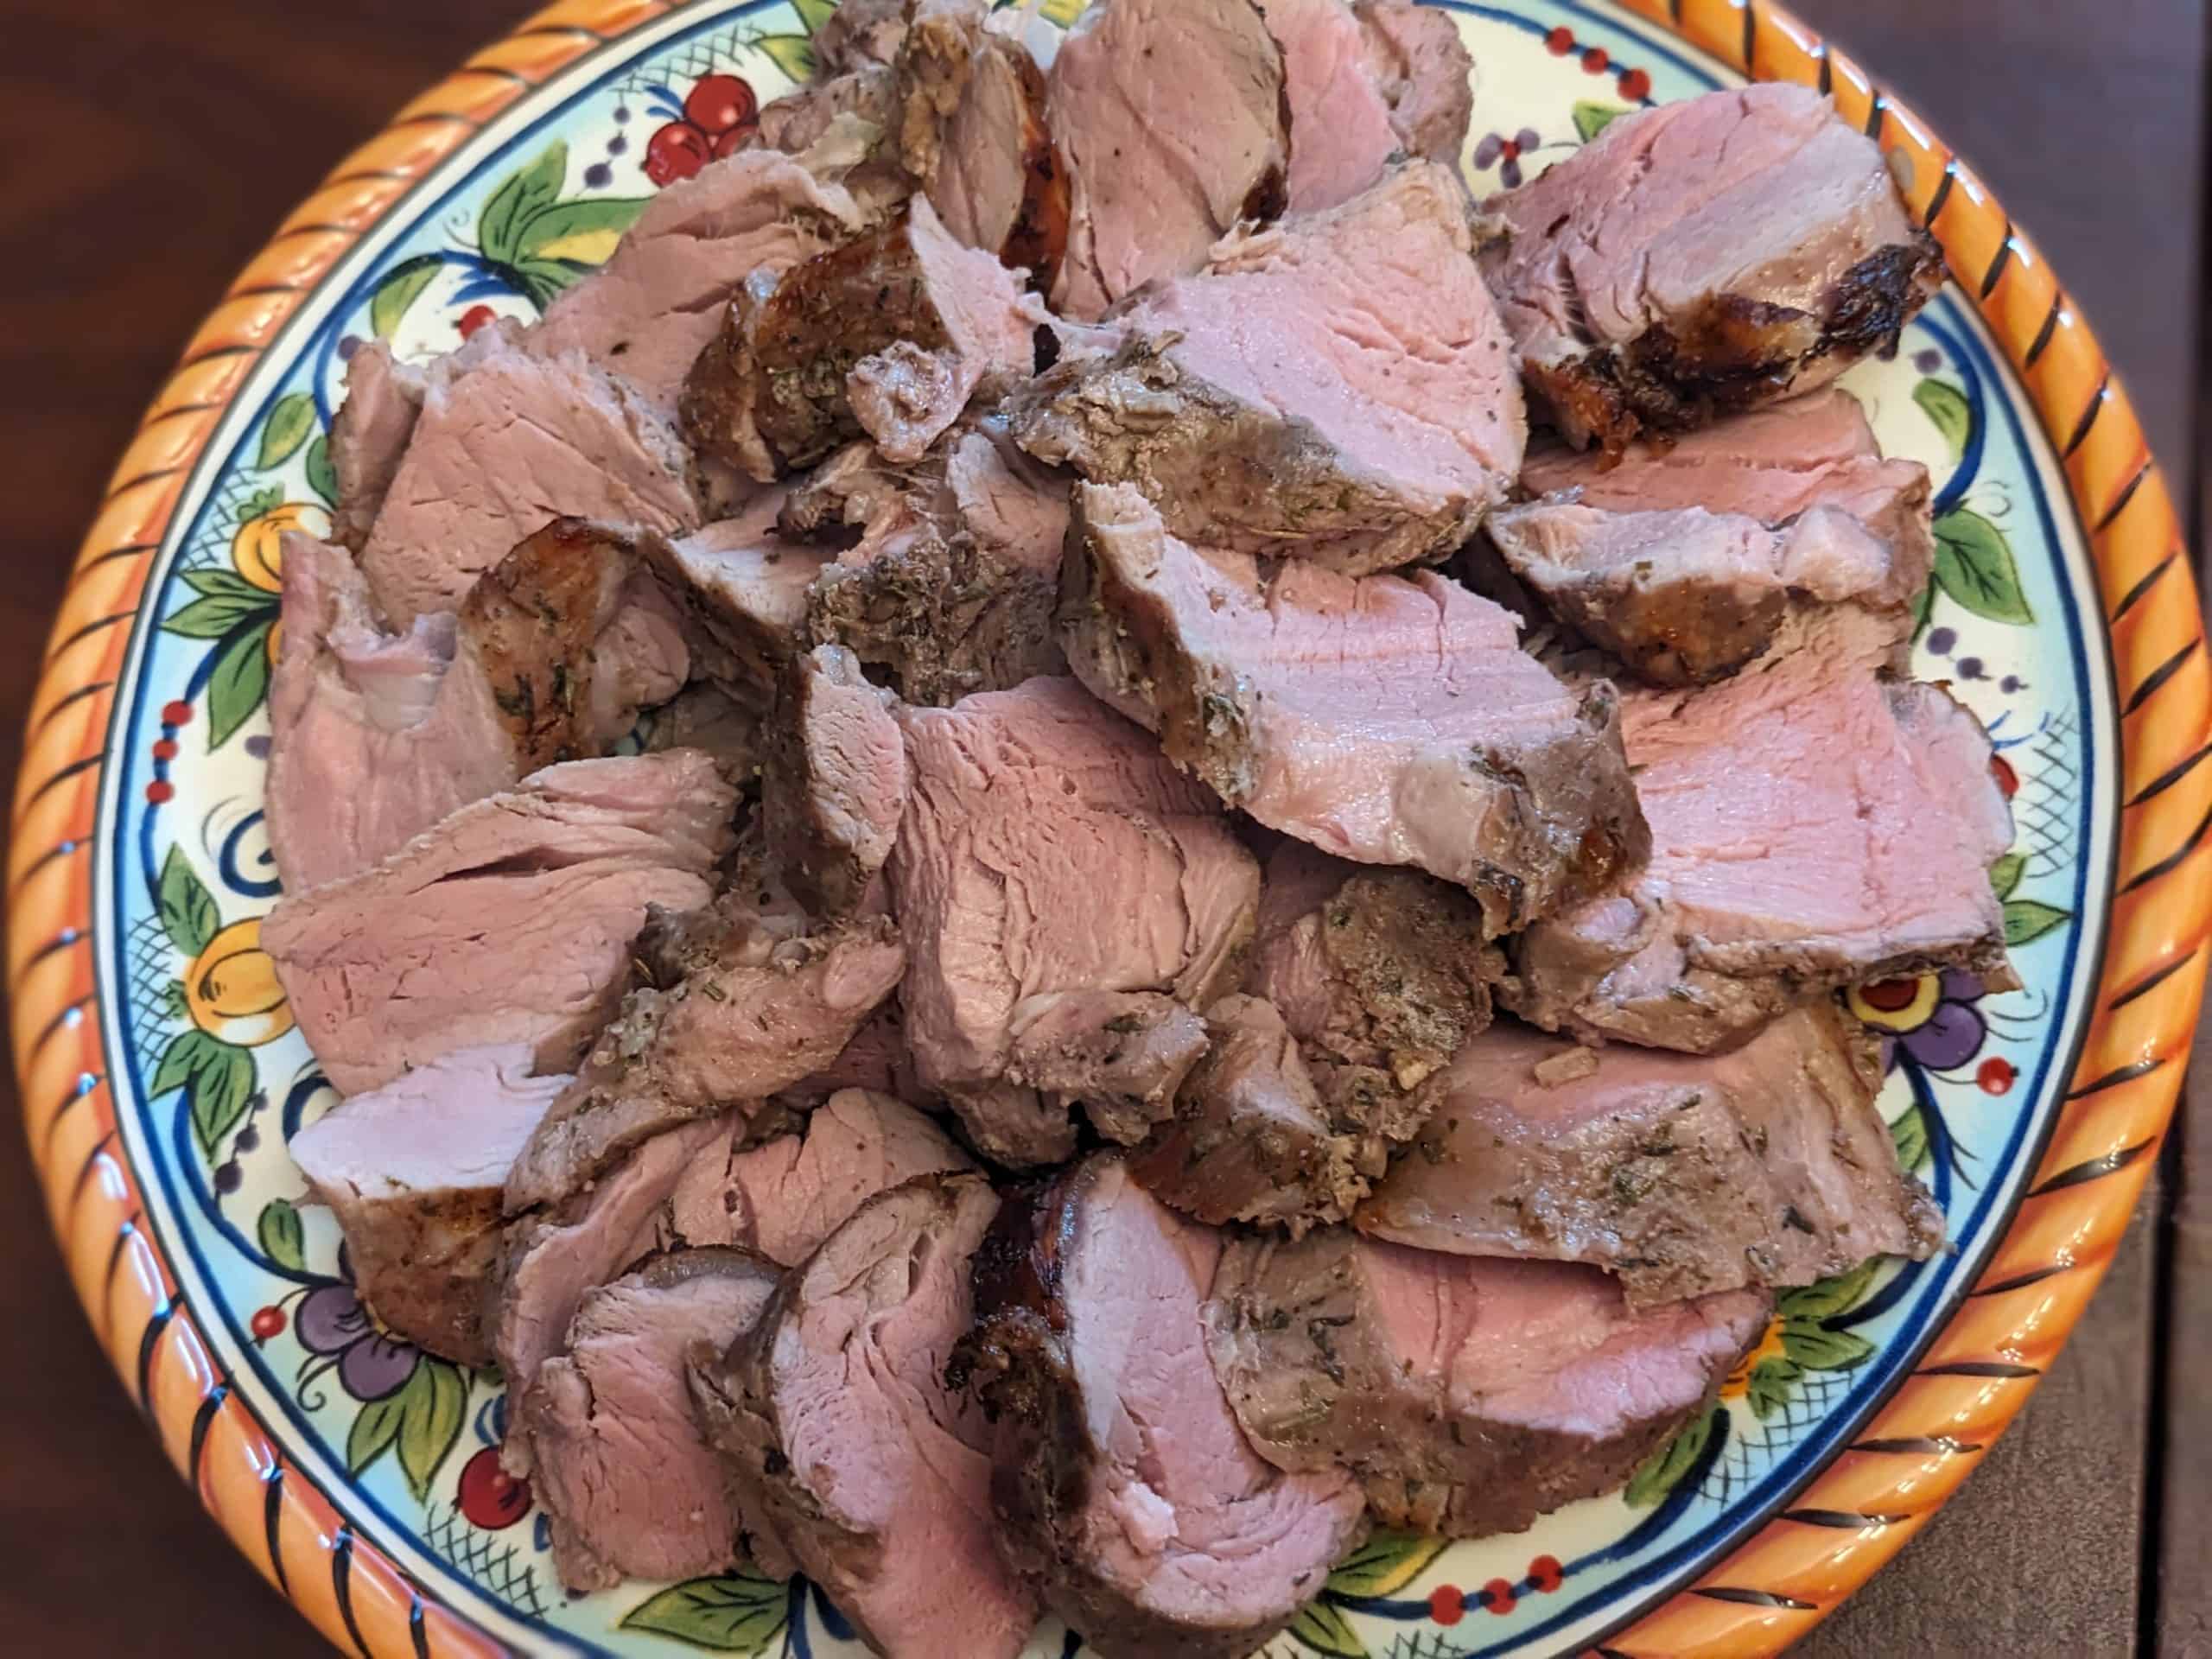 Herb-Rubbed Pork Tenderloin - sliced on serving plate